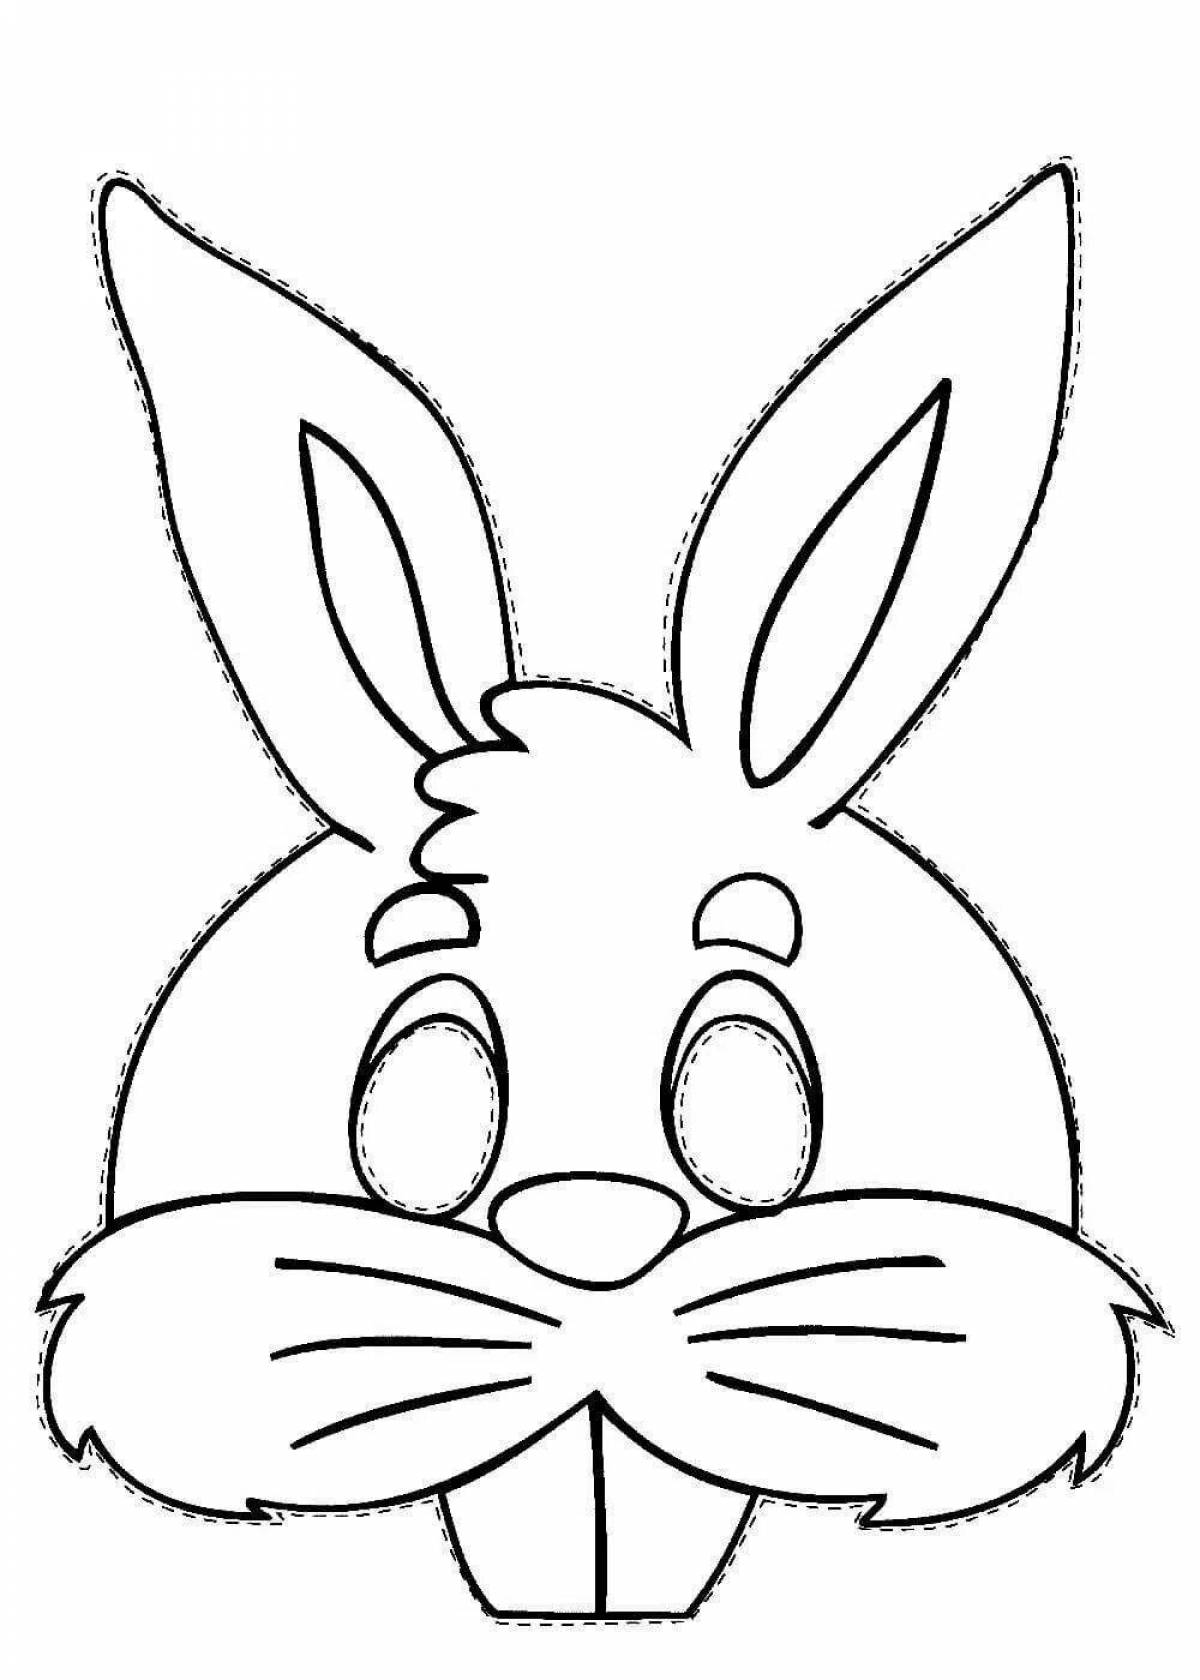 Zani rabbit head coloring book